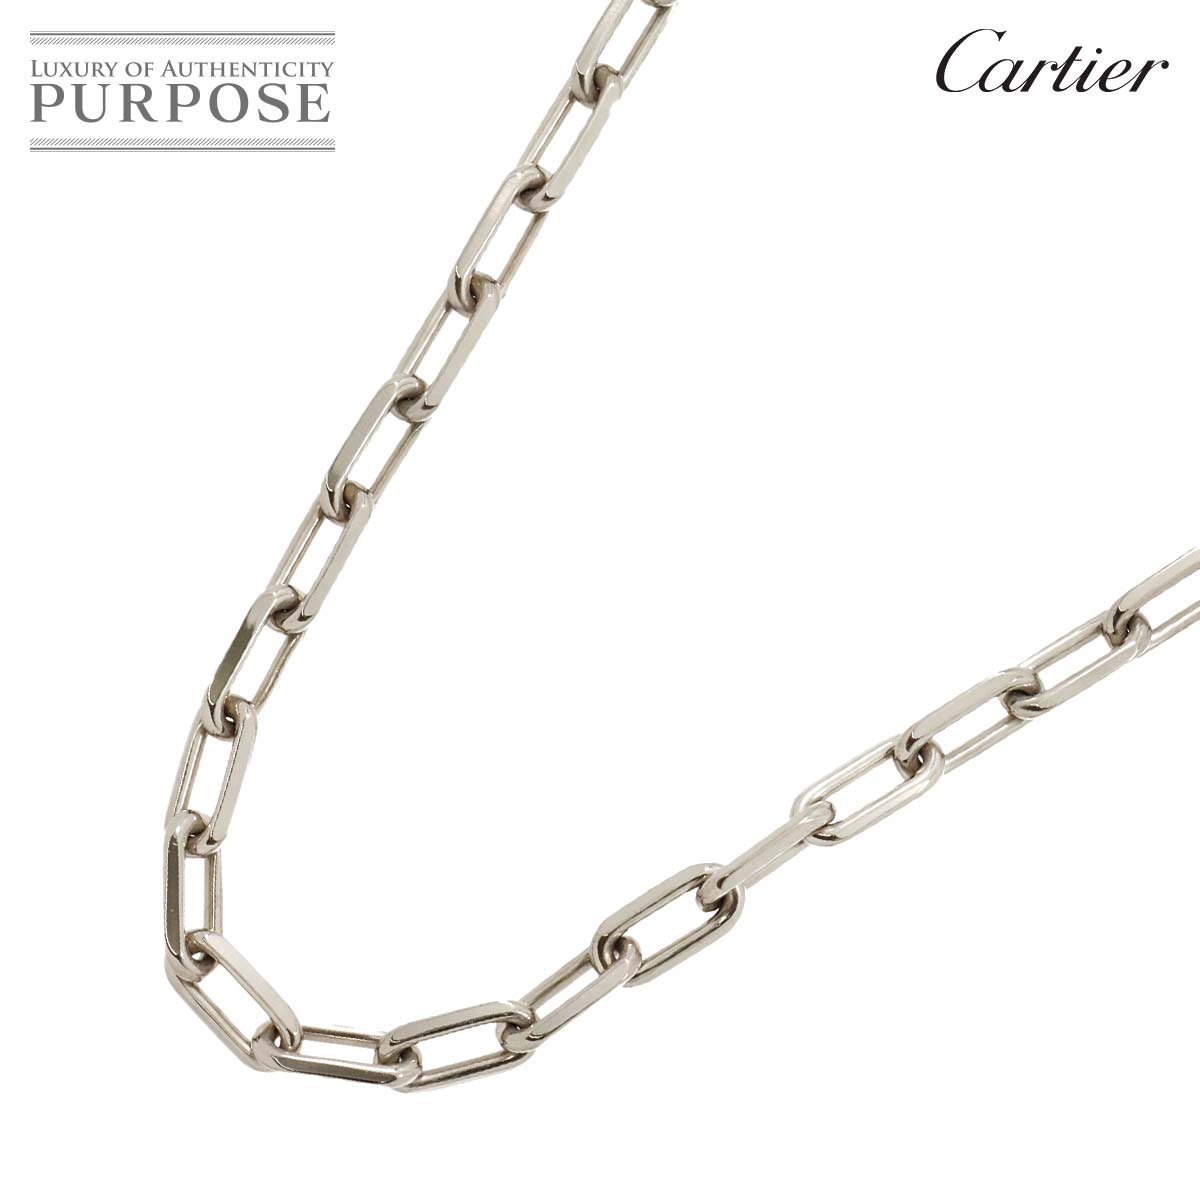 【新品同様】 カルティエ Cartier サントス デュモン チェーン ネックレス 56cm K18 WG ホワイトゴールド 750 Necklace【中古】